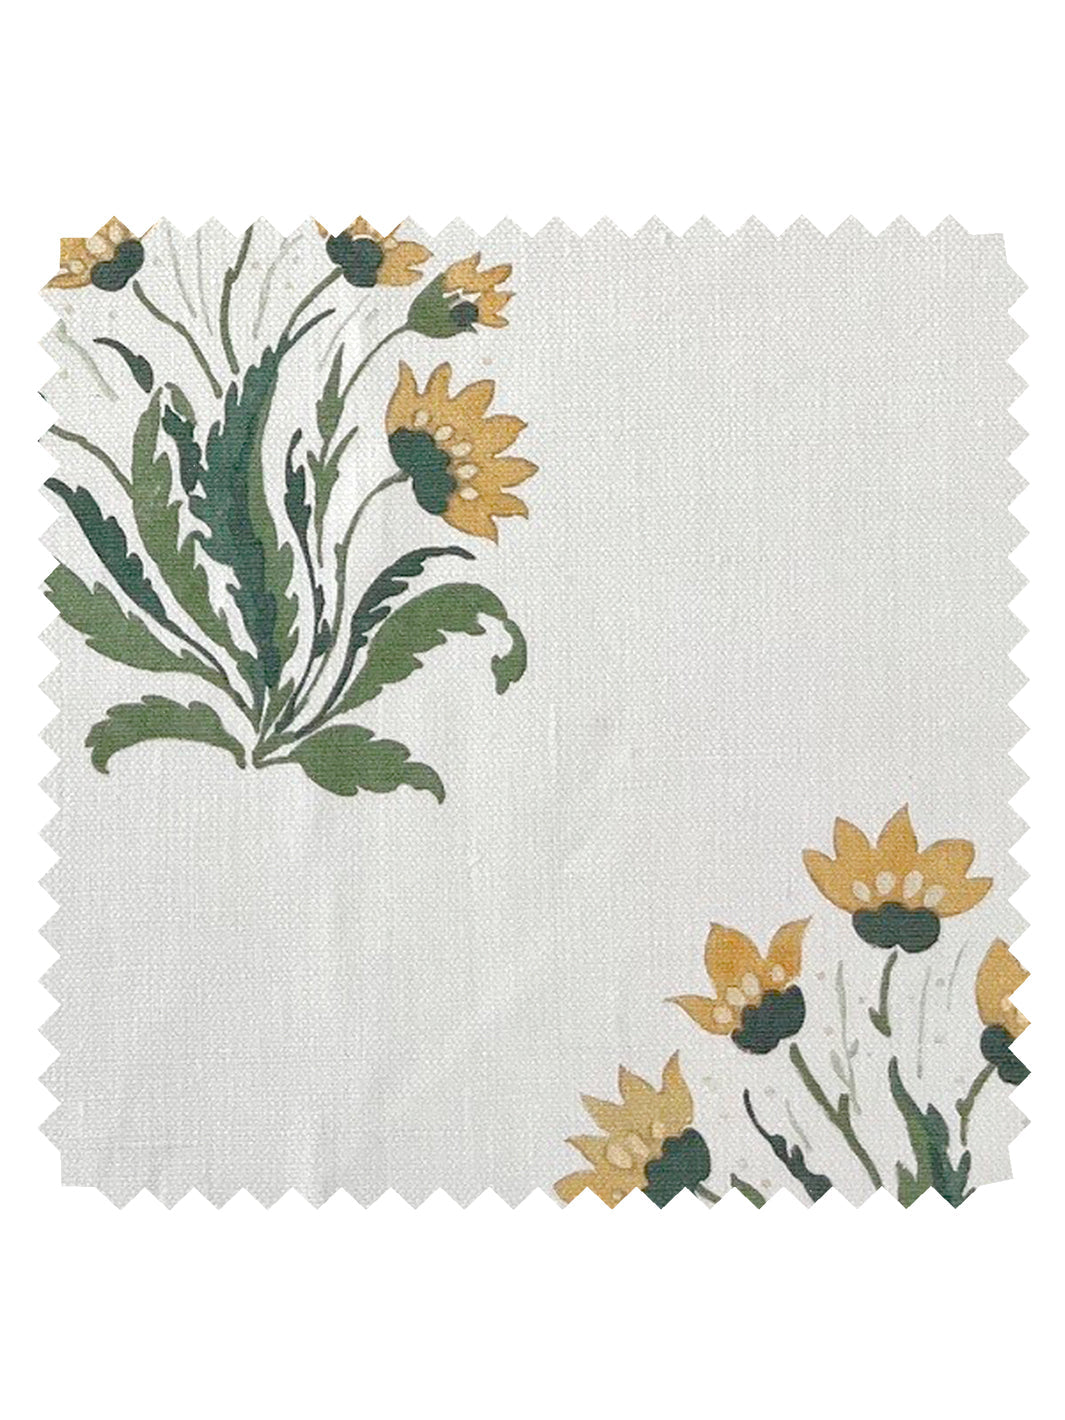 &#39;Hillhouse Block Print Small&#39; Linen Fabric - Gold Green